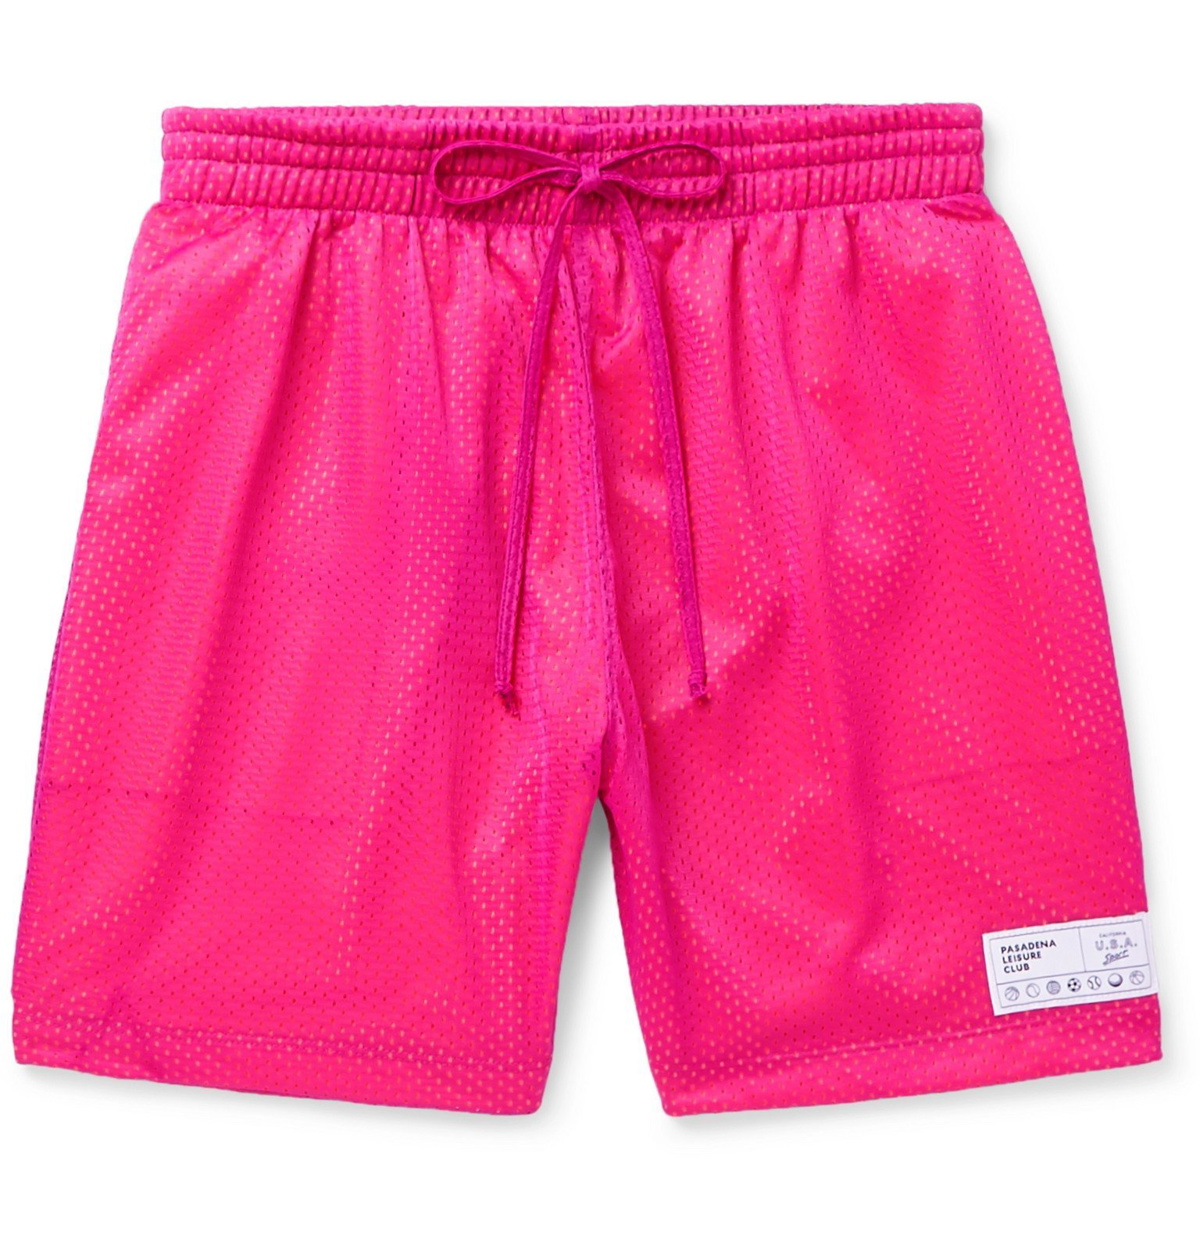 Leisurely Lifestyle Blush Pink Drawstring Lounge Shorts